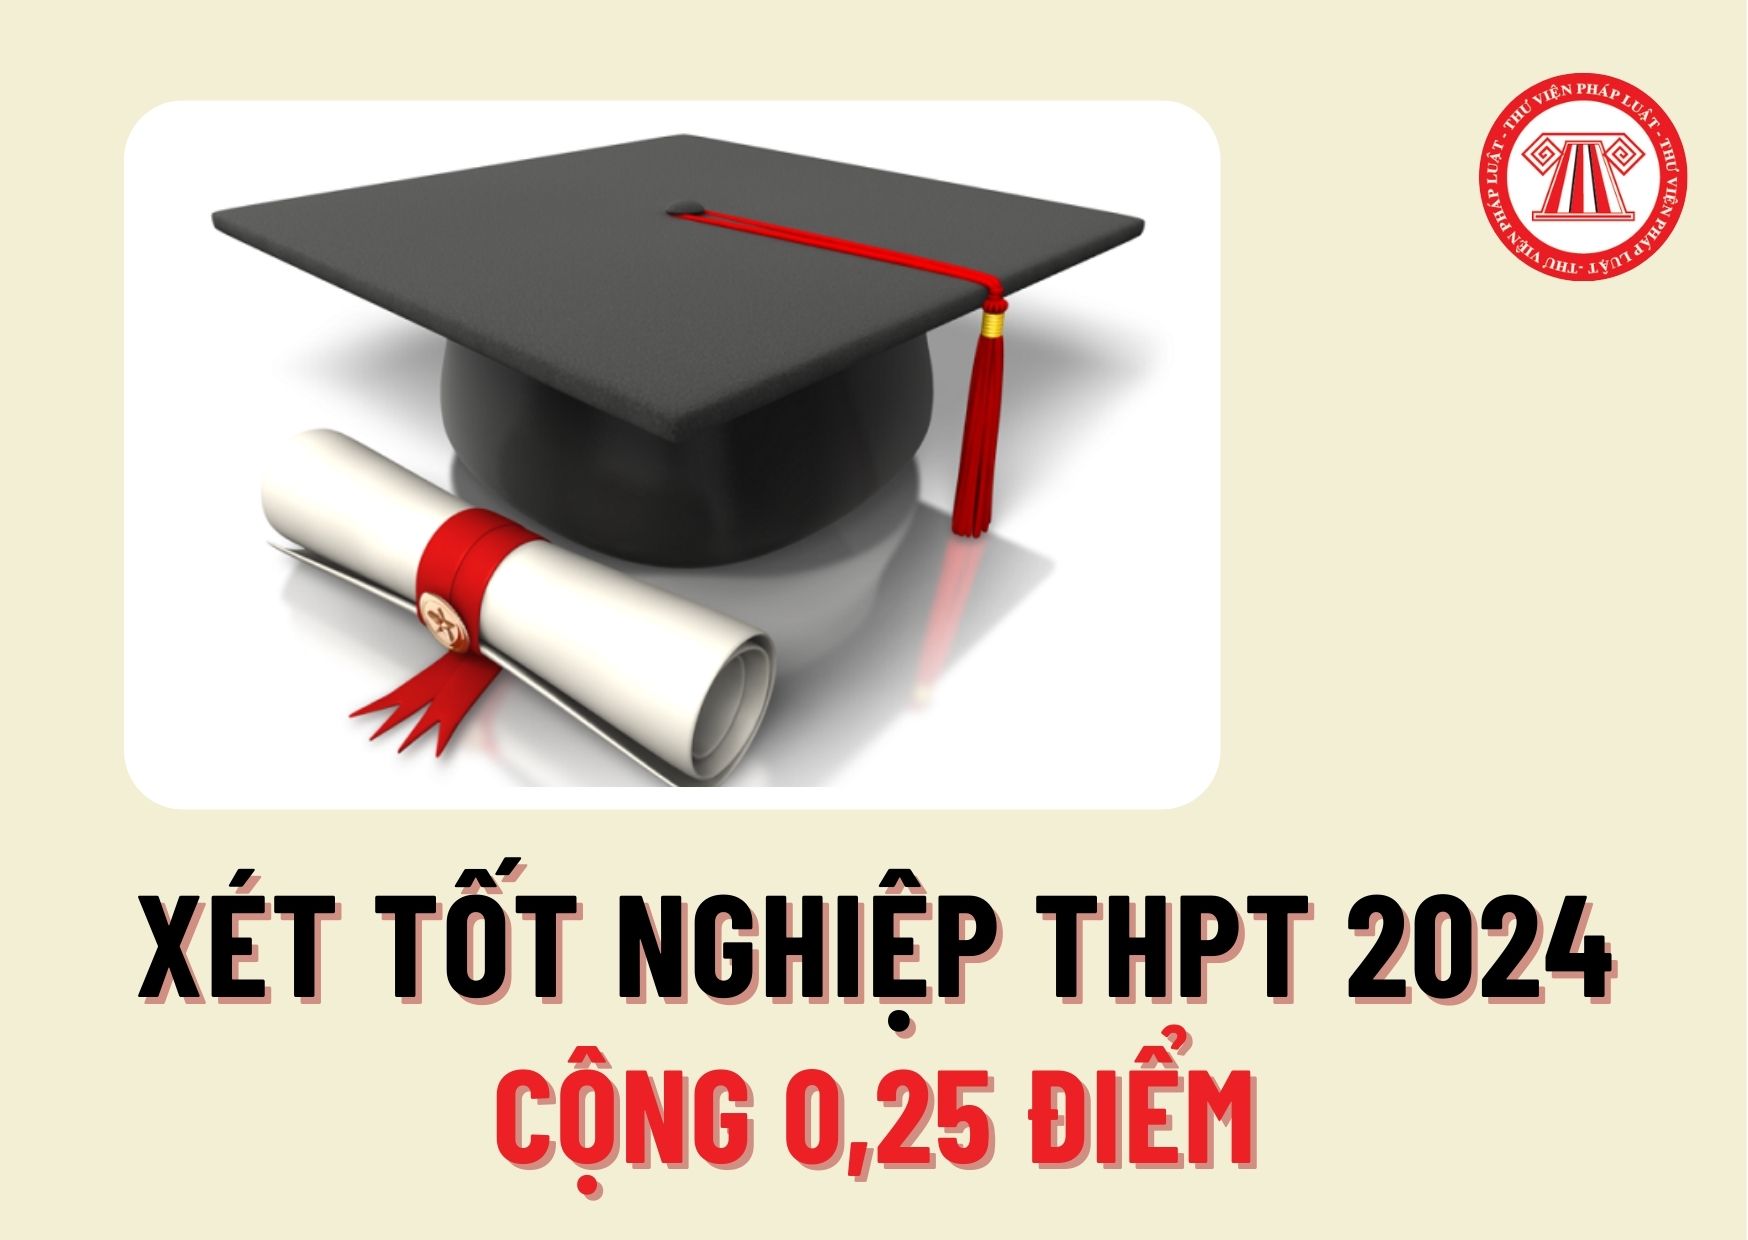 Thí sinh được cộng 0,25 điểm xét tốt nghiệp THPT 2024 khi nào? Công nhận thí sinh tốt nghiệp THPT trong trường hợp nào?